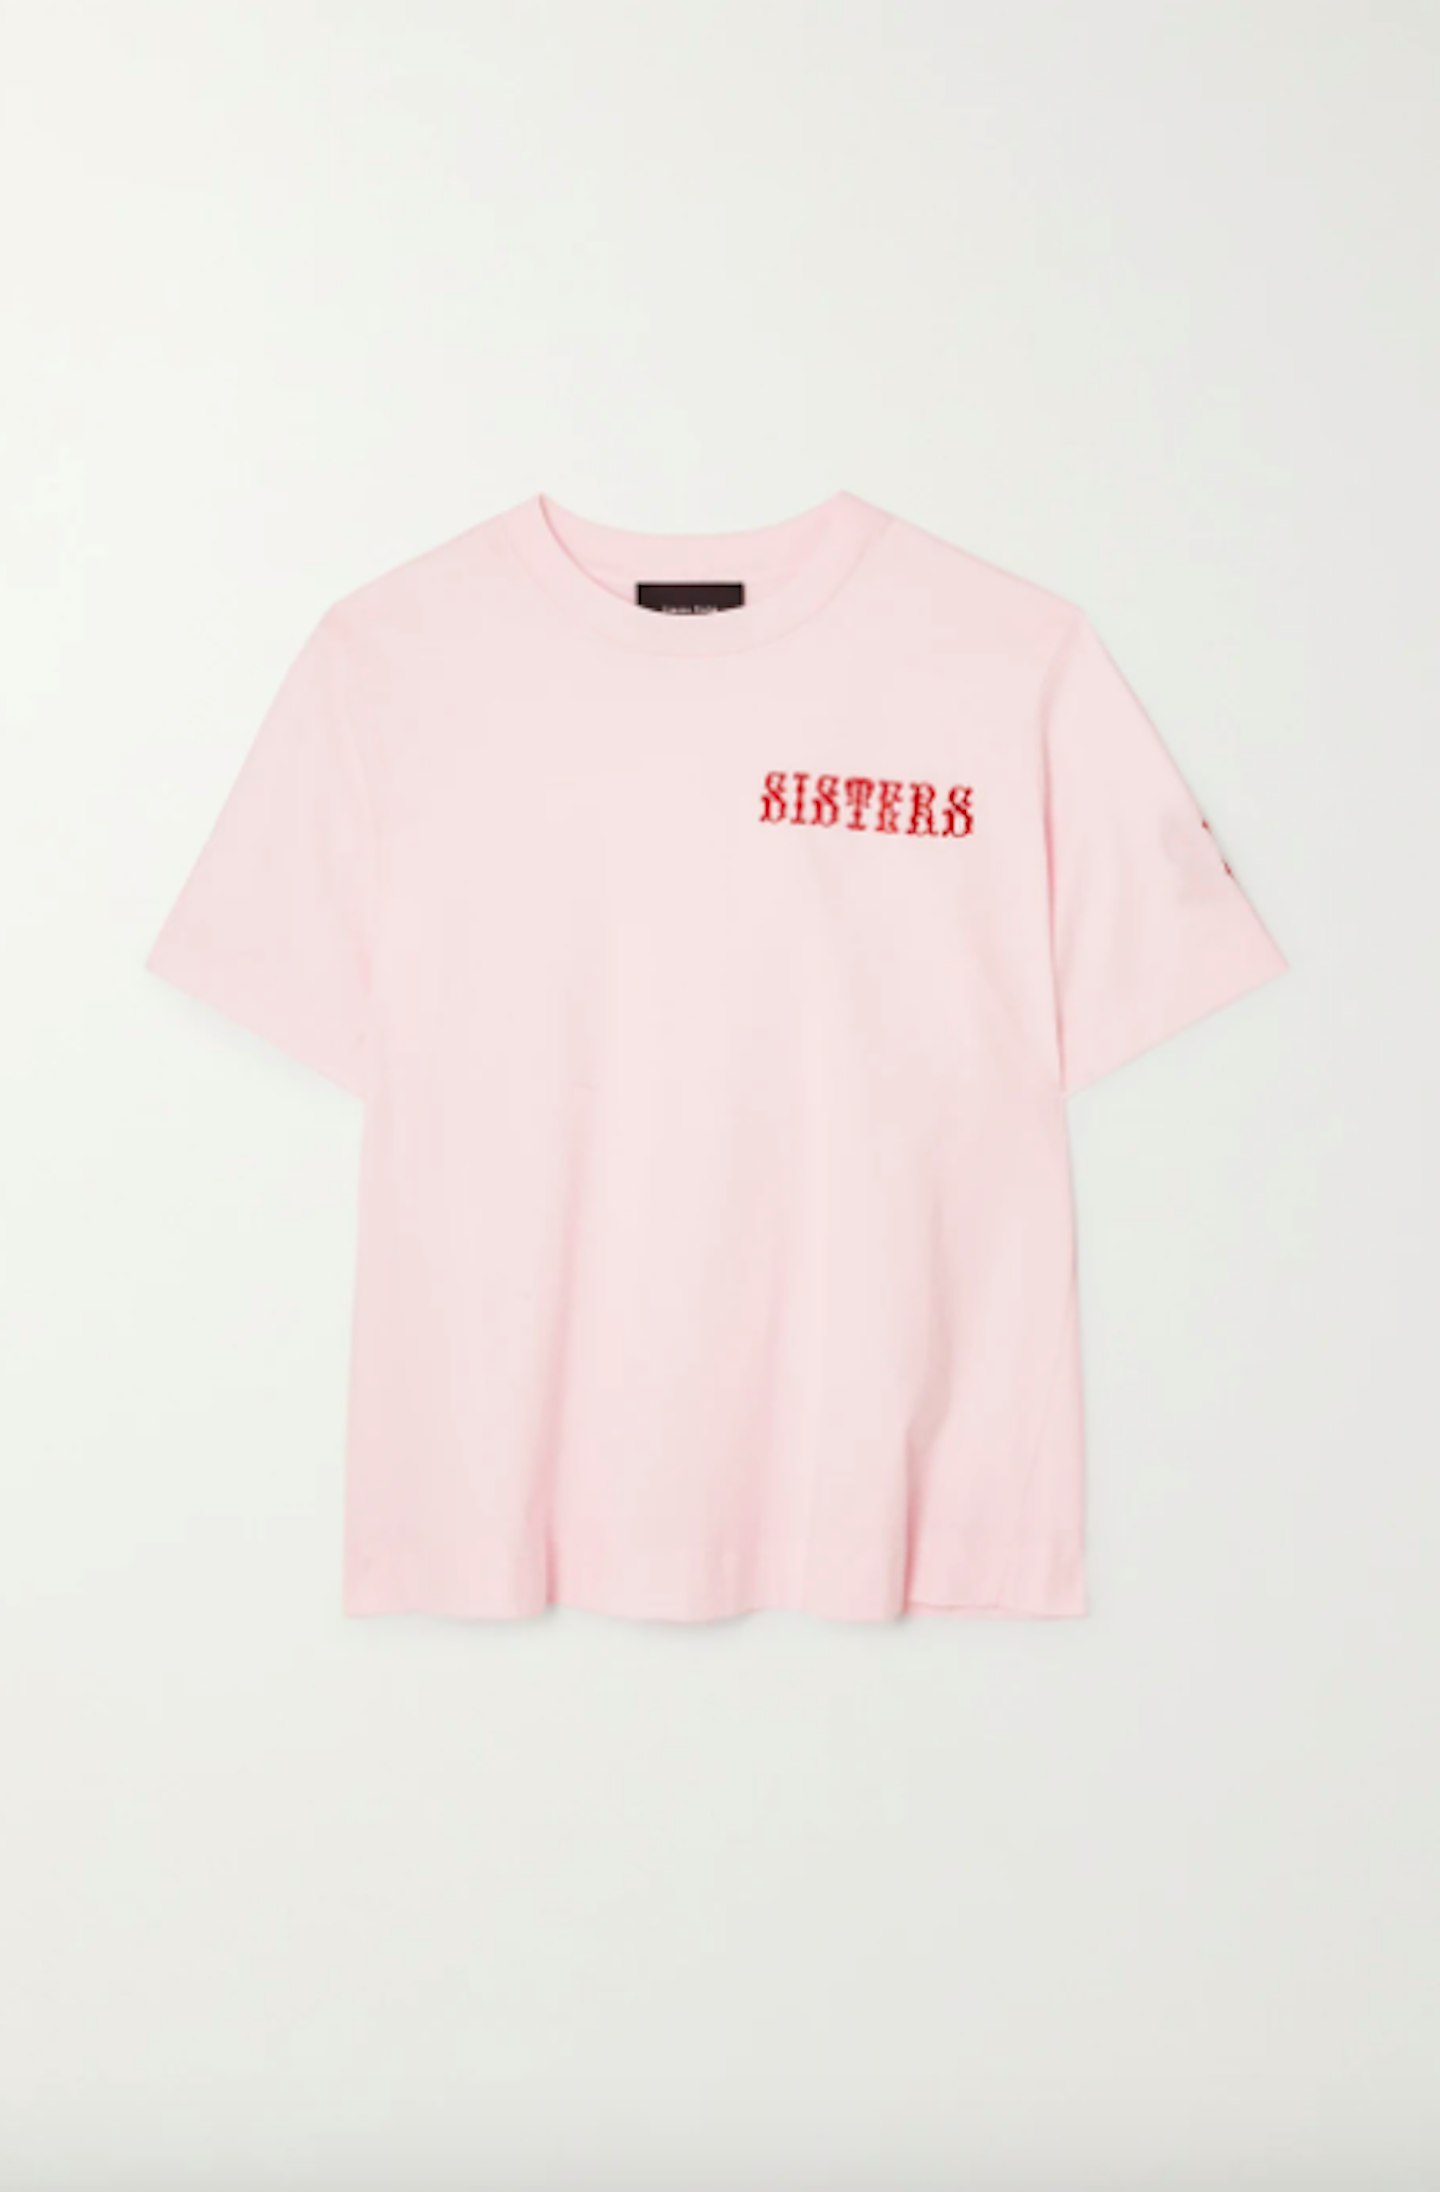 Simone Rocha, International Women's Day T-Shirt, £175 at Net-a-Porter